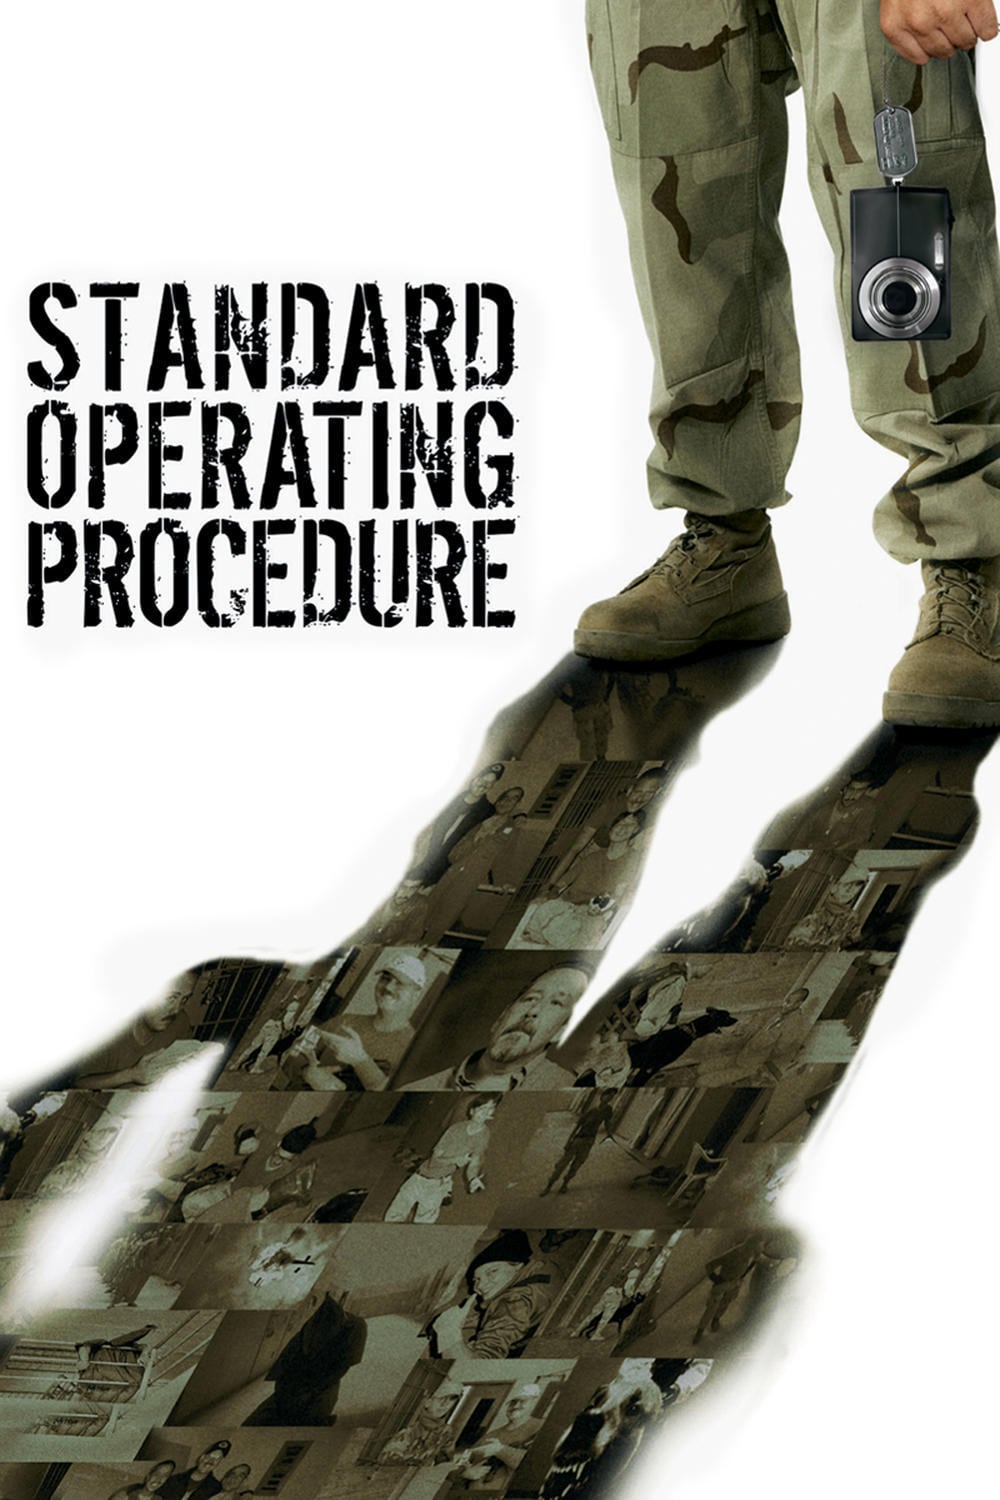 Caratula de Standard Operating Procedure (Standard Operating Procedure) 